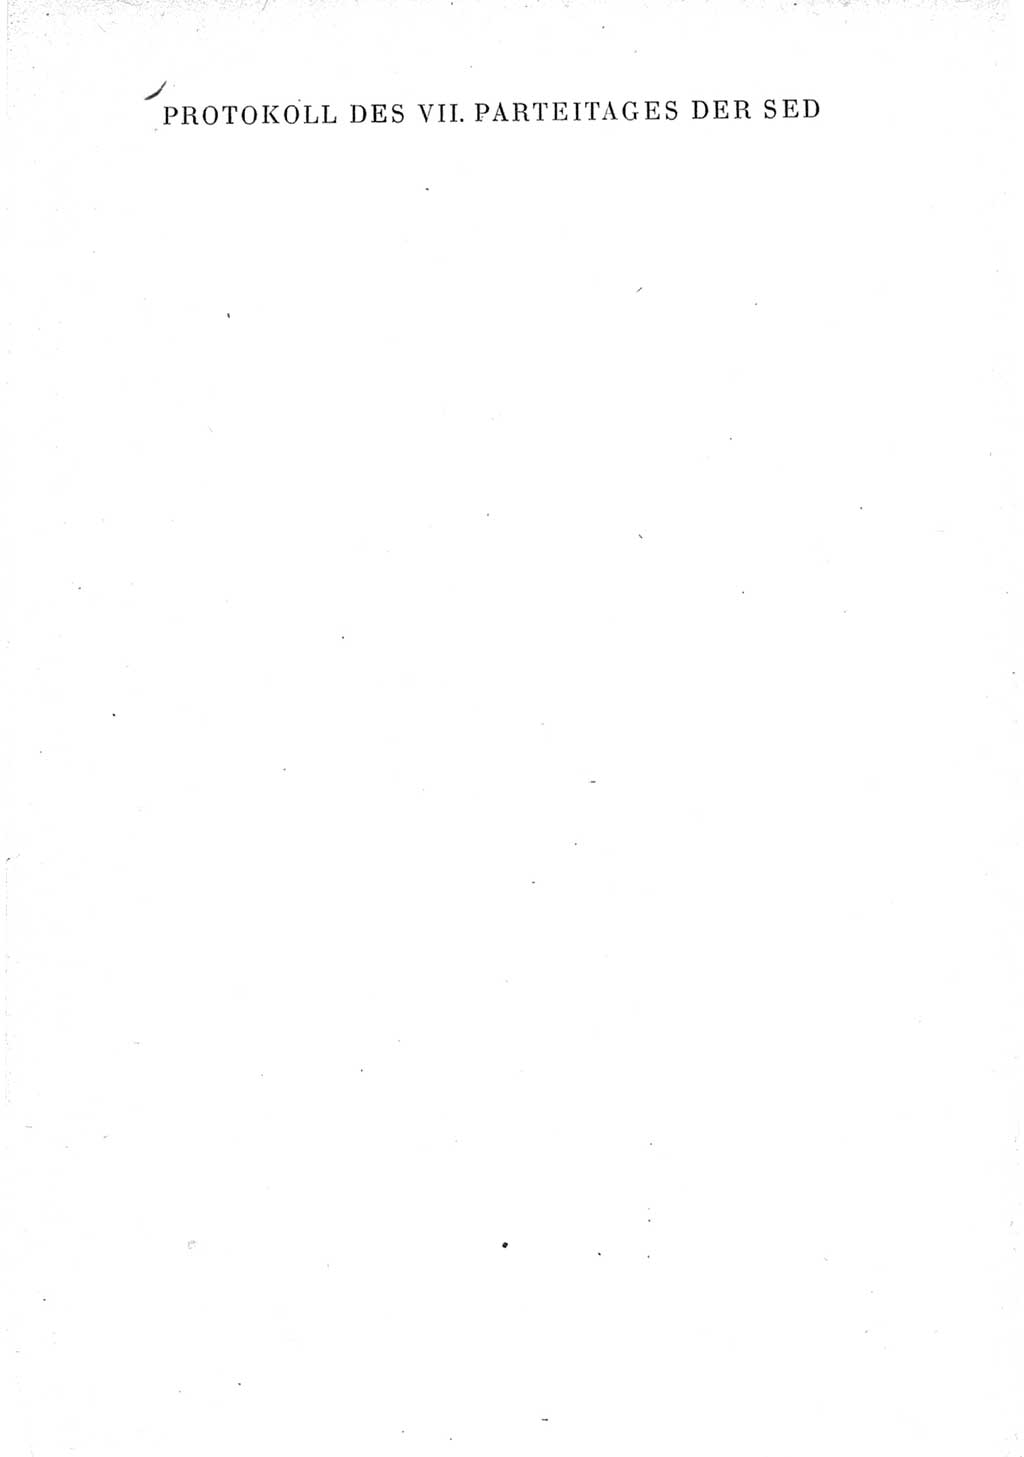 Protokoll der Verhandlungen des Ⅶ. Parteitages der Sozialistischen Einheitspartei Deutschlands (SED) [Deutsche Demokratische Republik (DDR)] 1967, Band Ⅲ, Seite 1 (Prot. Verh. Ⅶ. PT SED DDR 1967, Bd. Ⅲ, S. 1)